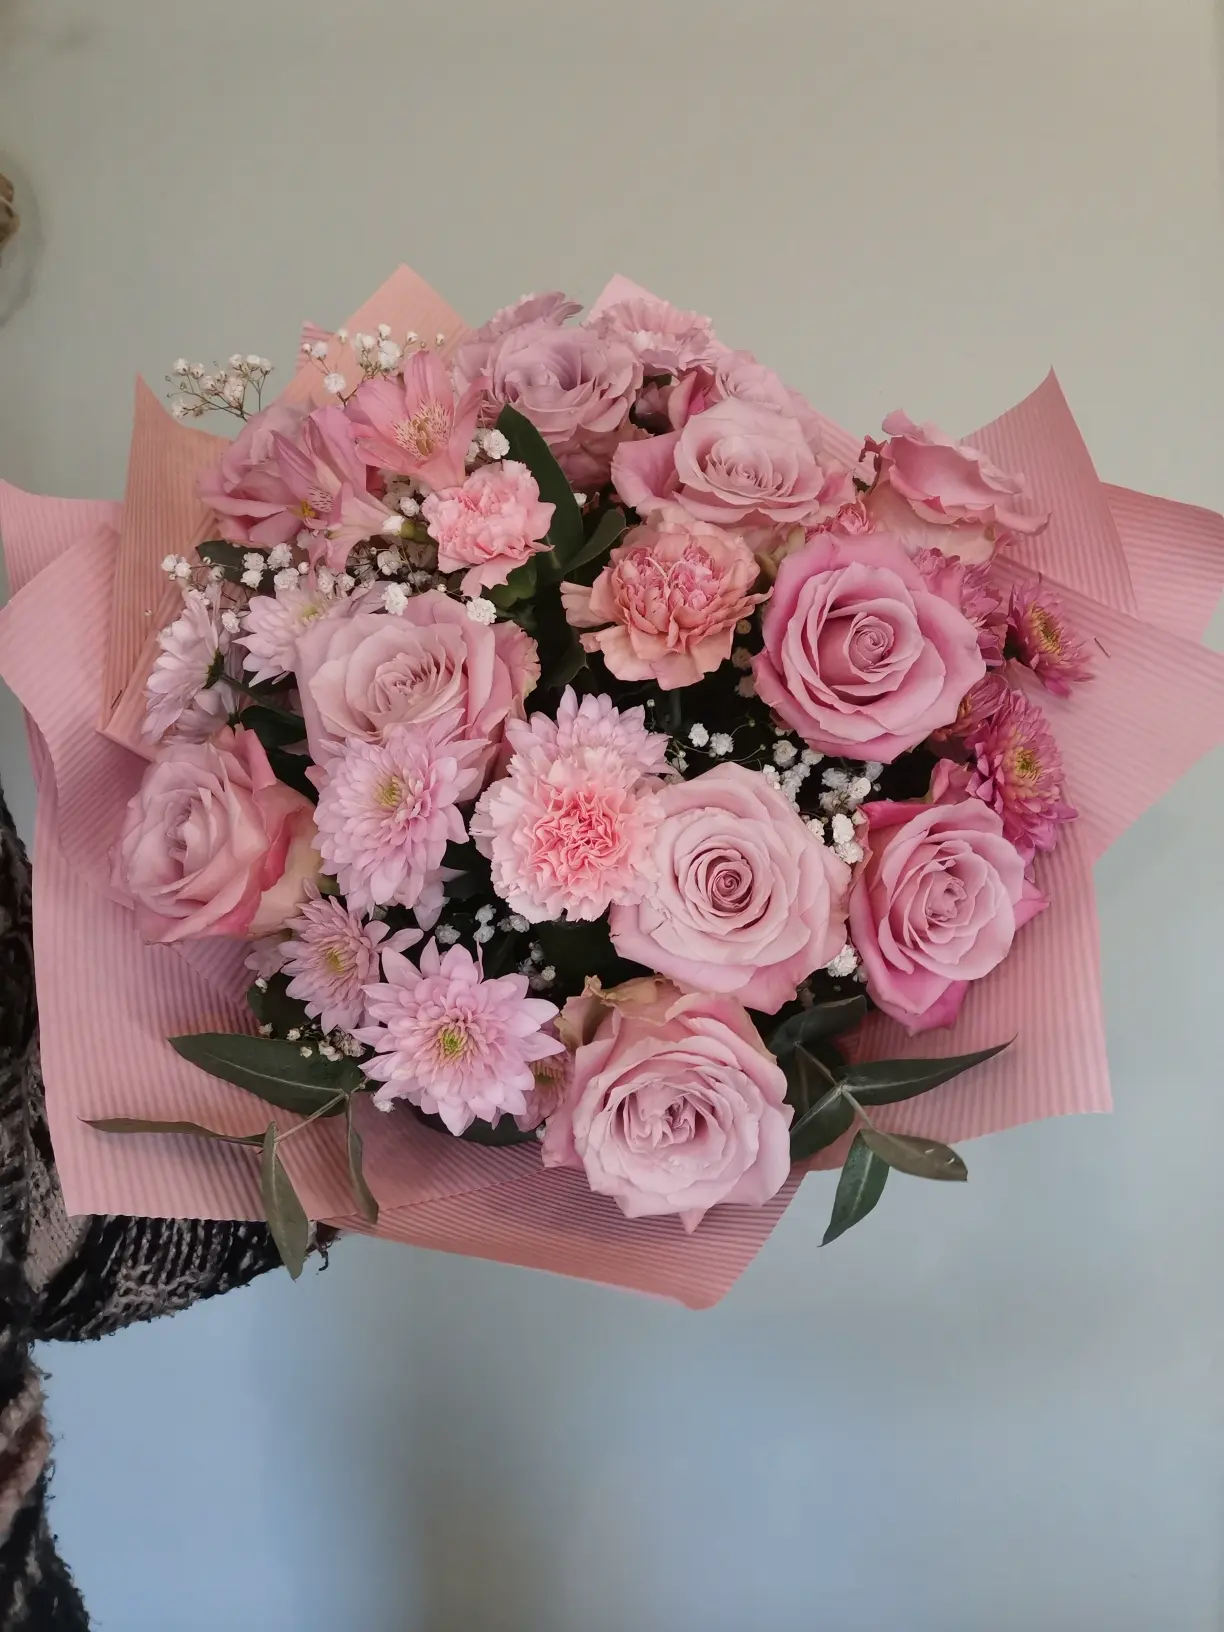 Bukiet z pastelowymi różami to delikatna i romantyczna kompozycja kwiatowa.